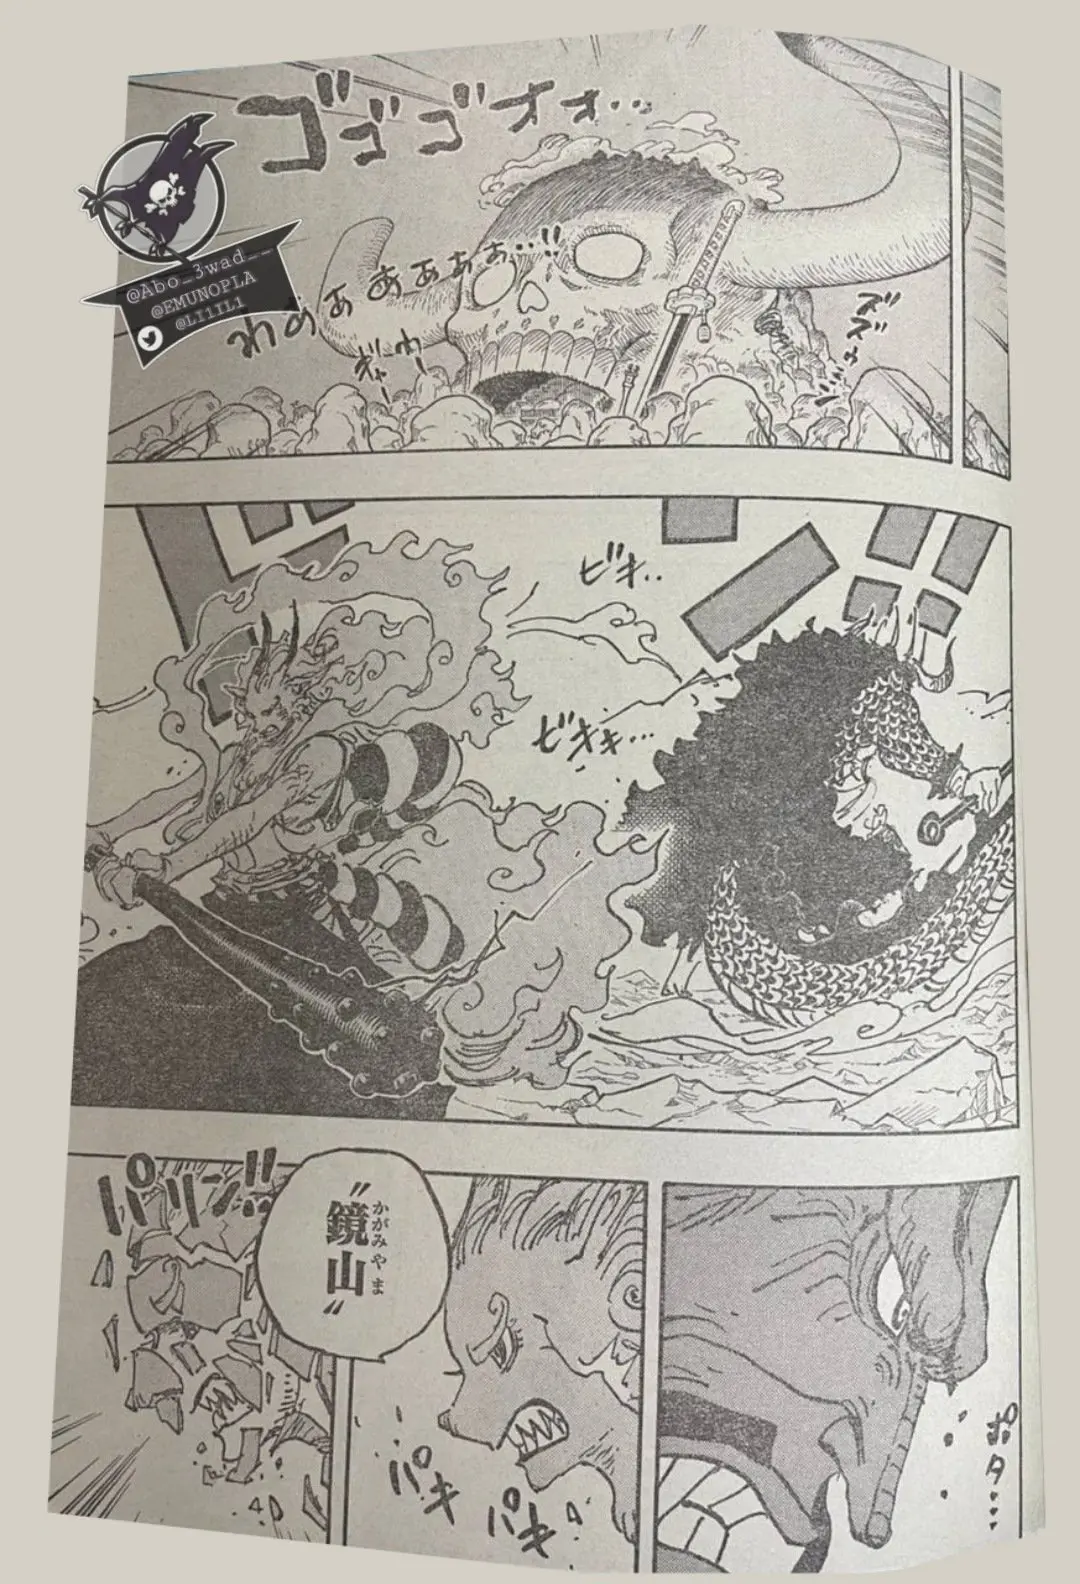 One Piece Manga 1025 Spoiler 003.jpg One Piece 1025 Spoilers: Luffy & Yamato Vs Kaido!